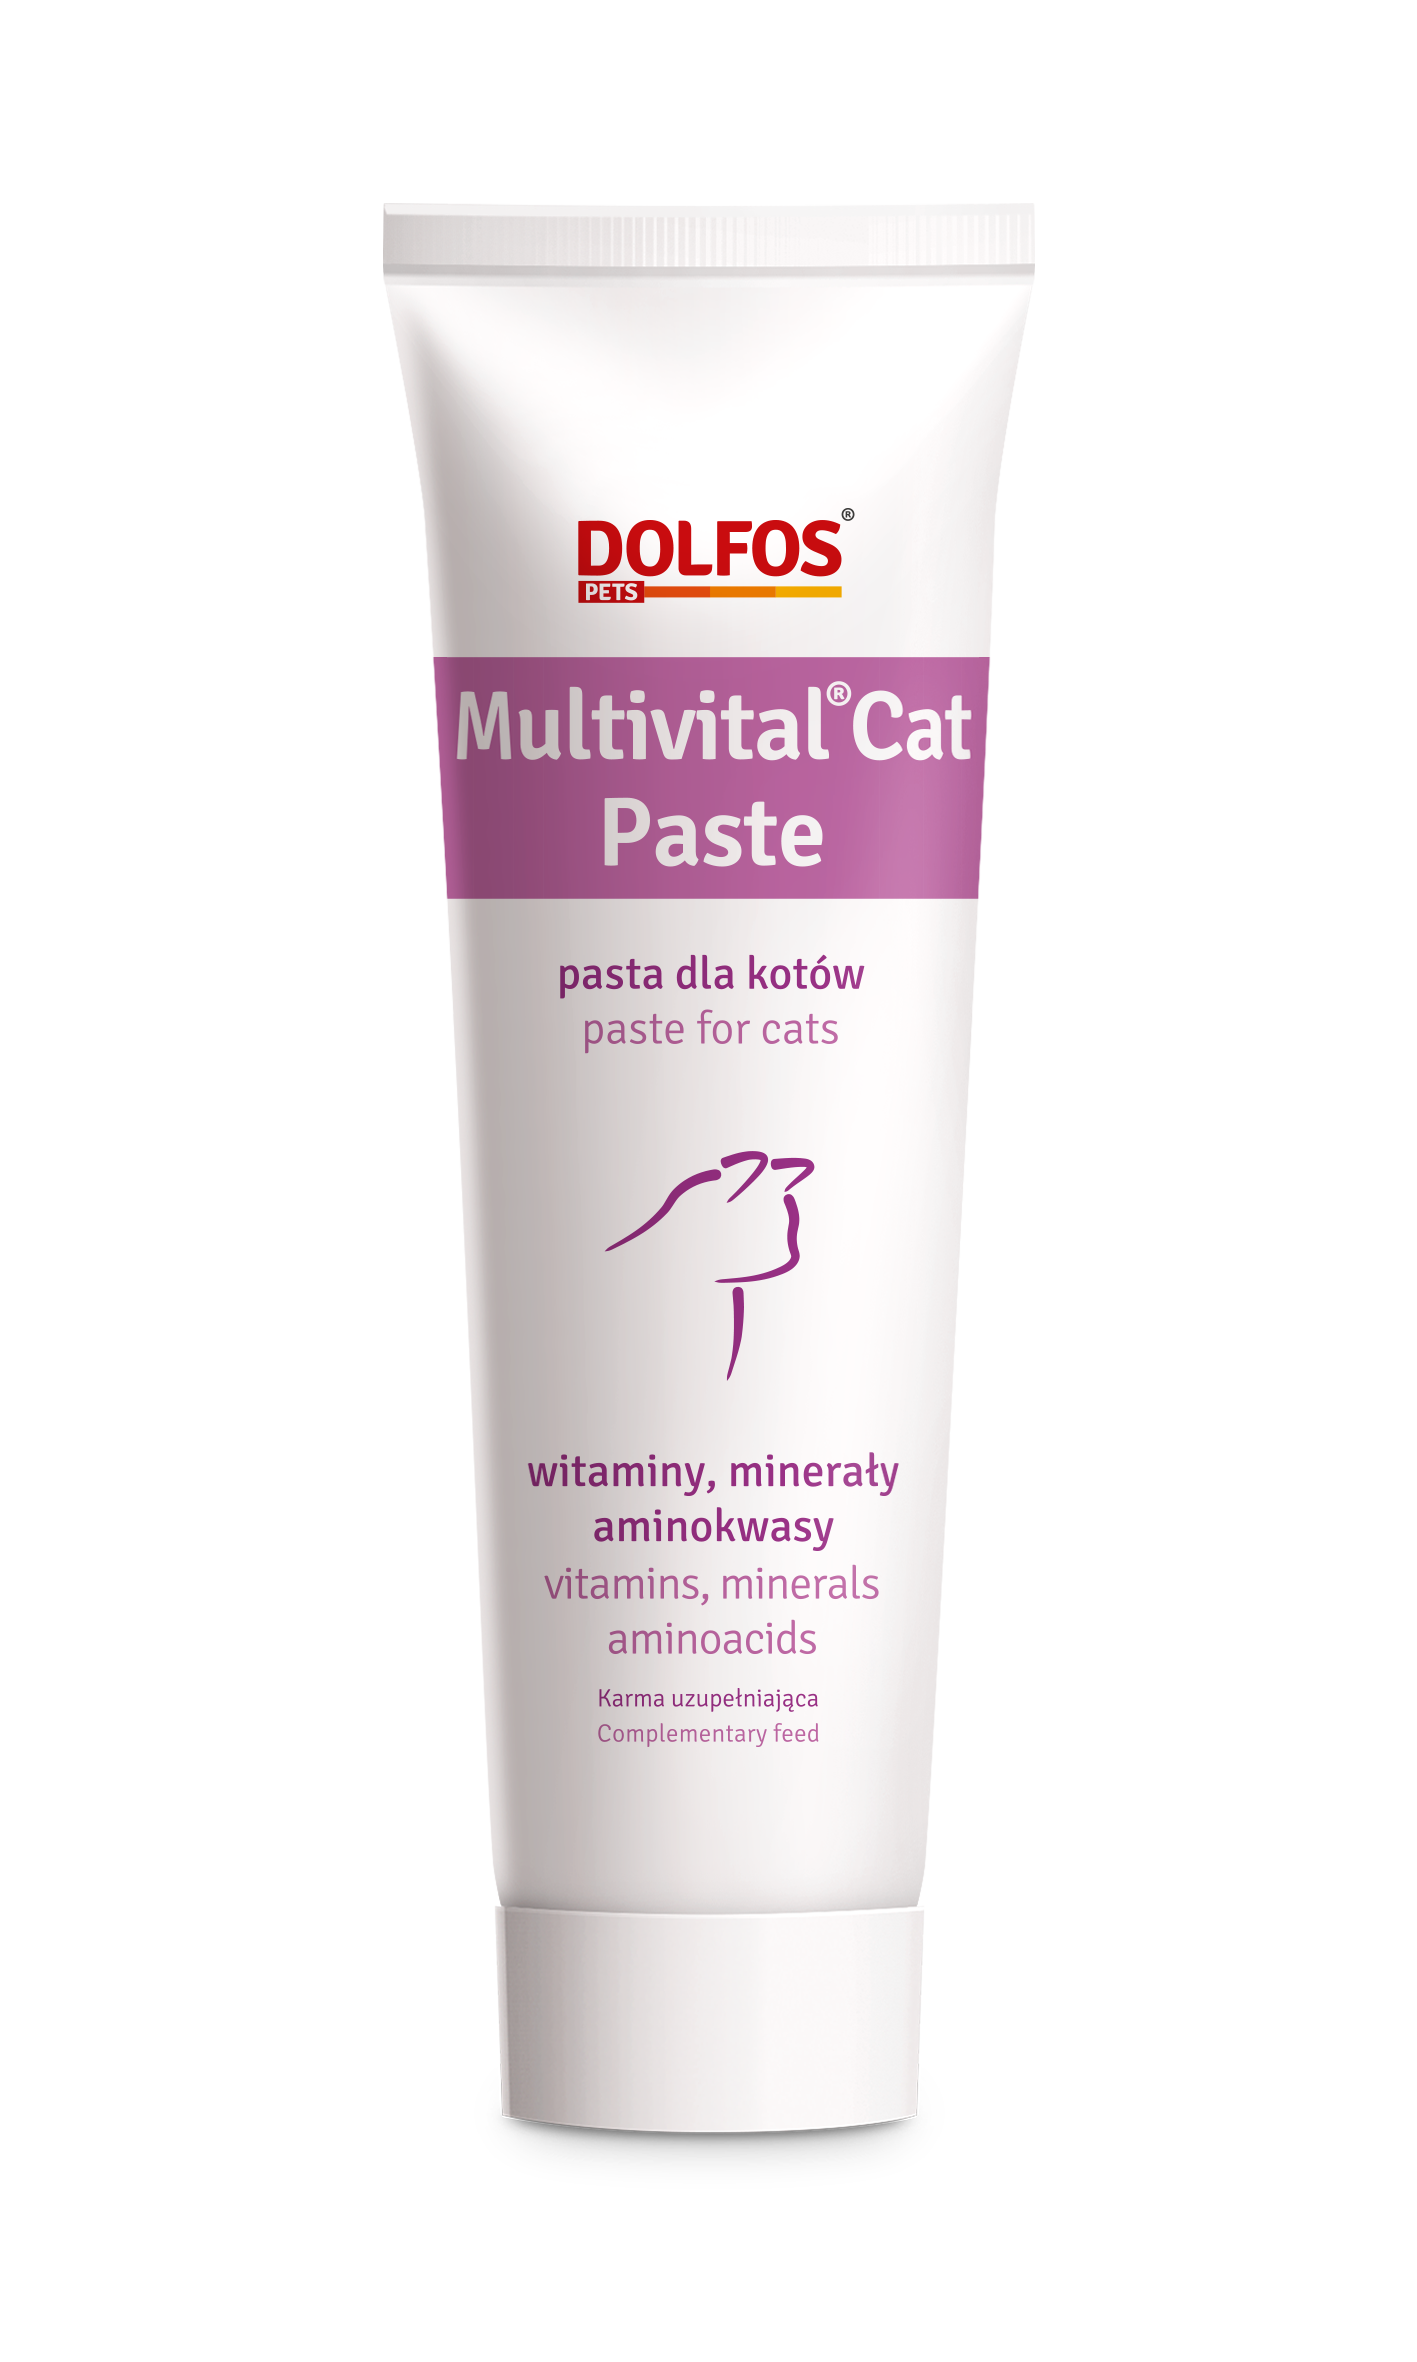 Multivital en pasta para gatos son  vitaminas, minerales y aminoácidos que incluye taurina, para gatos de todas las edades 